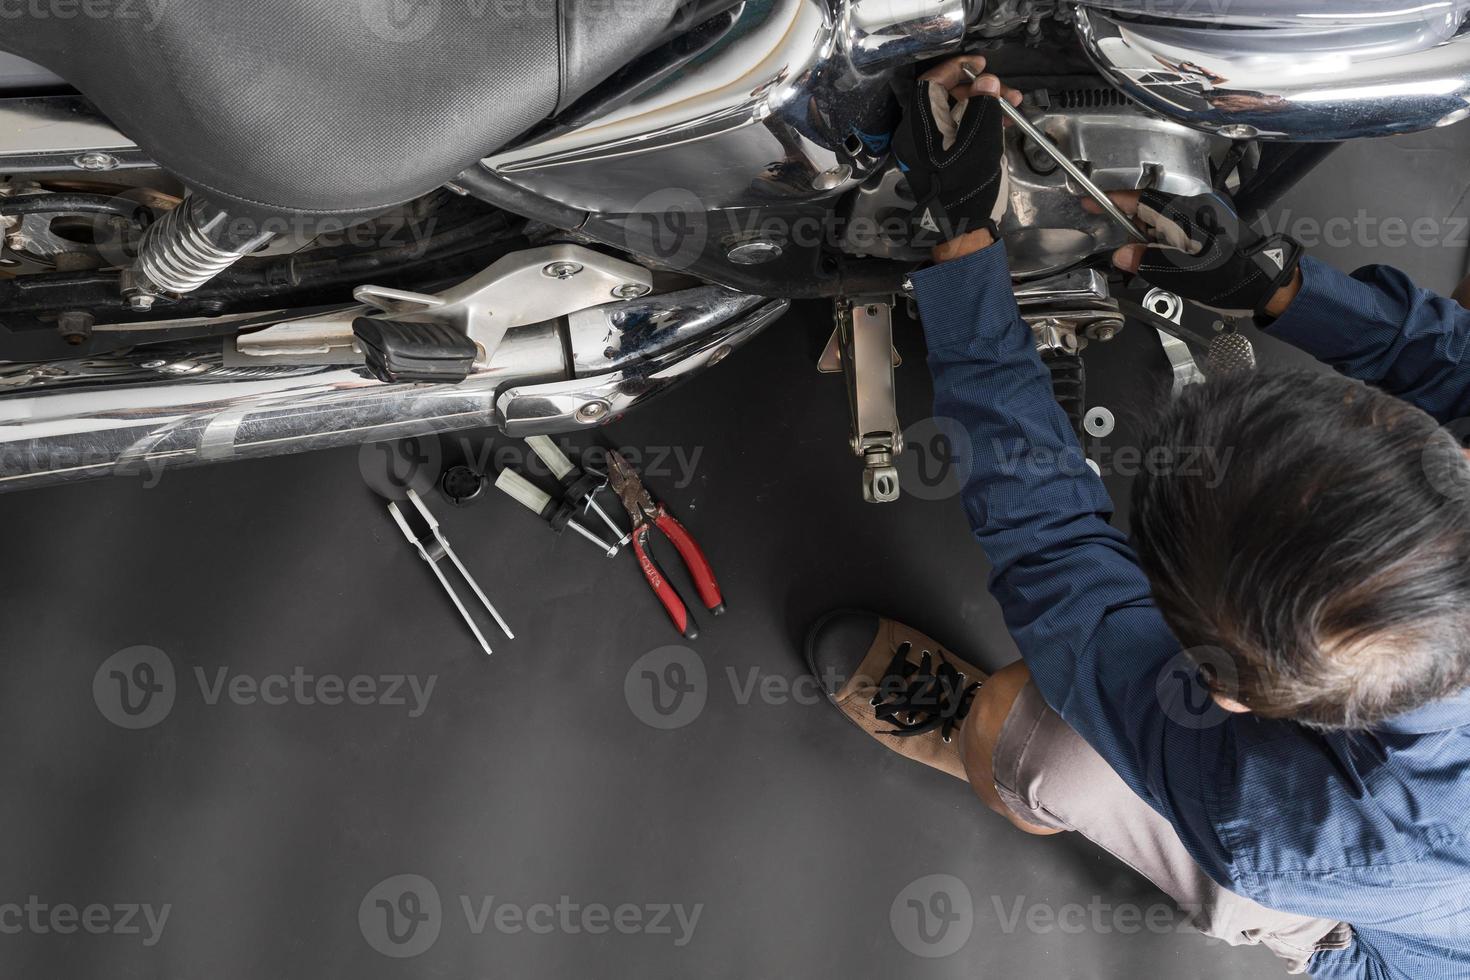 människor är reparation en motorcykel använda sig av en rycka och en skruvmejsel till arbete foto